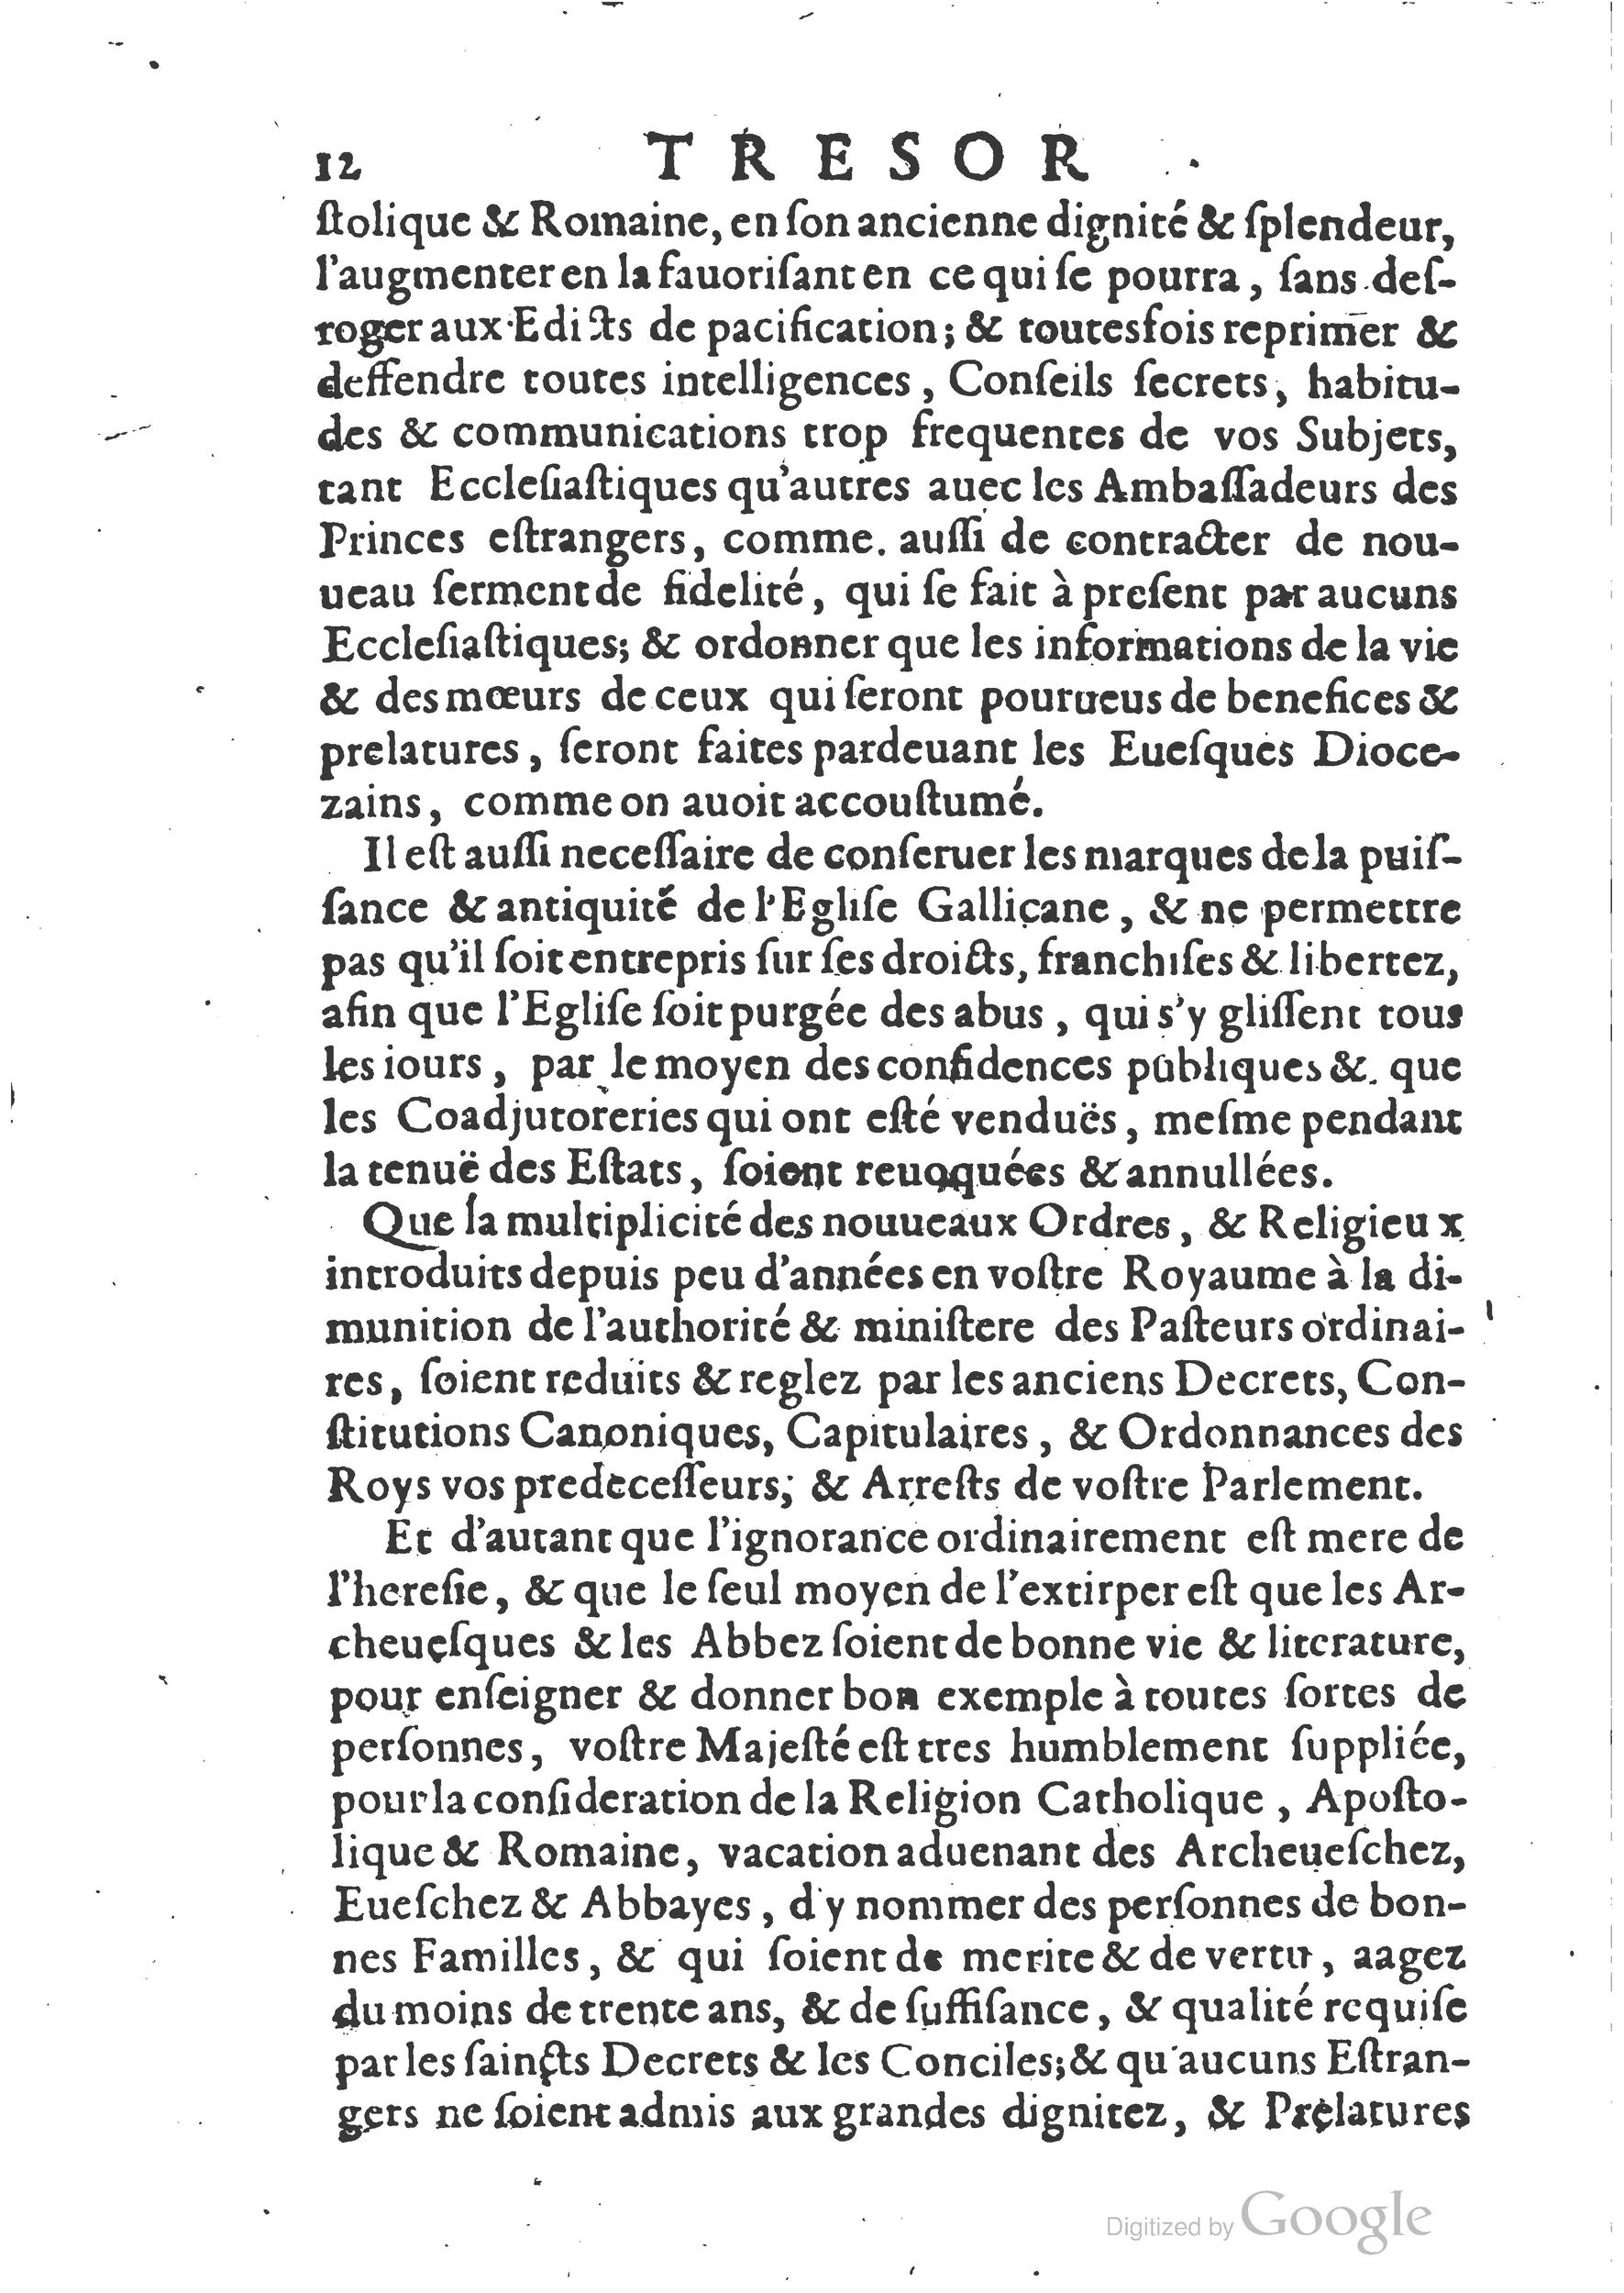 1654 Trésor des harangues, remontrances et oraisons funèbres Robin_BM Lyon_Page_263.jpg